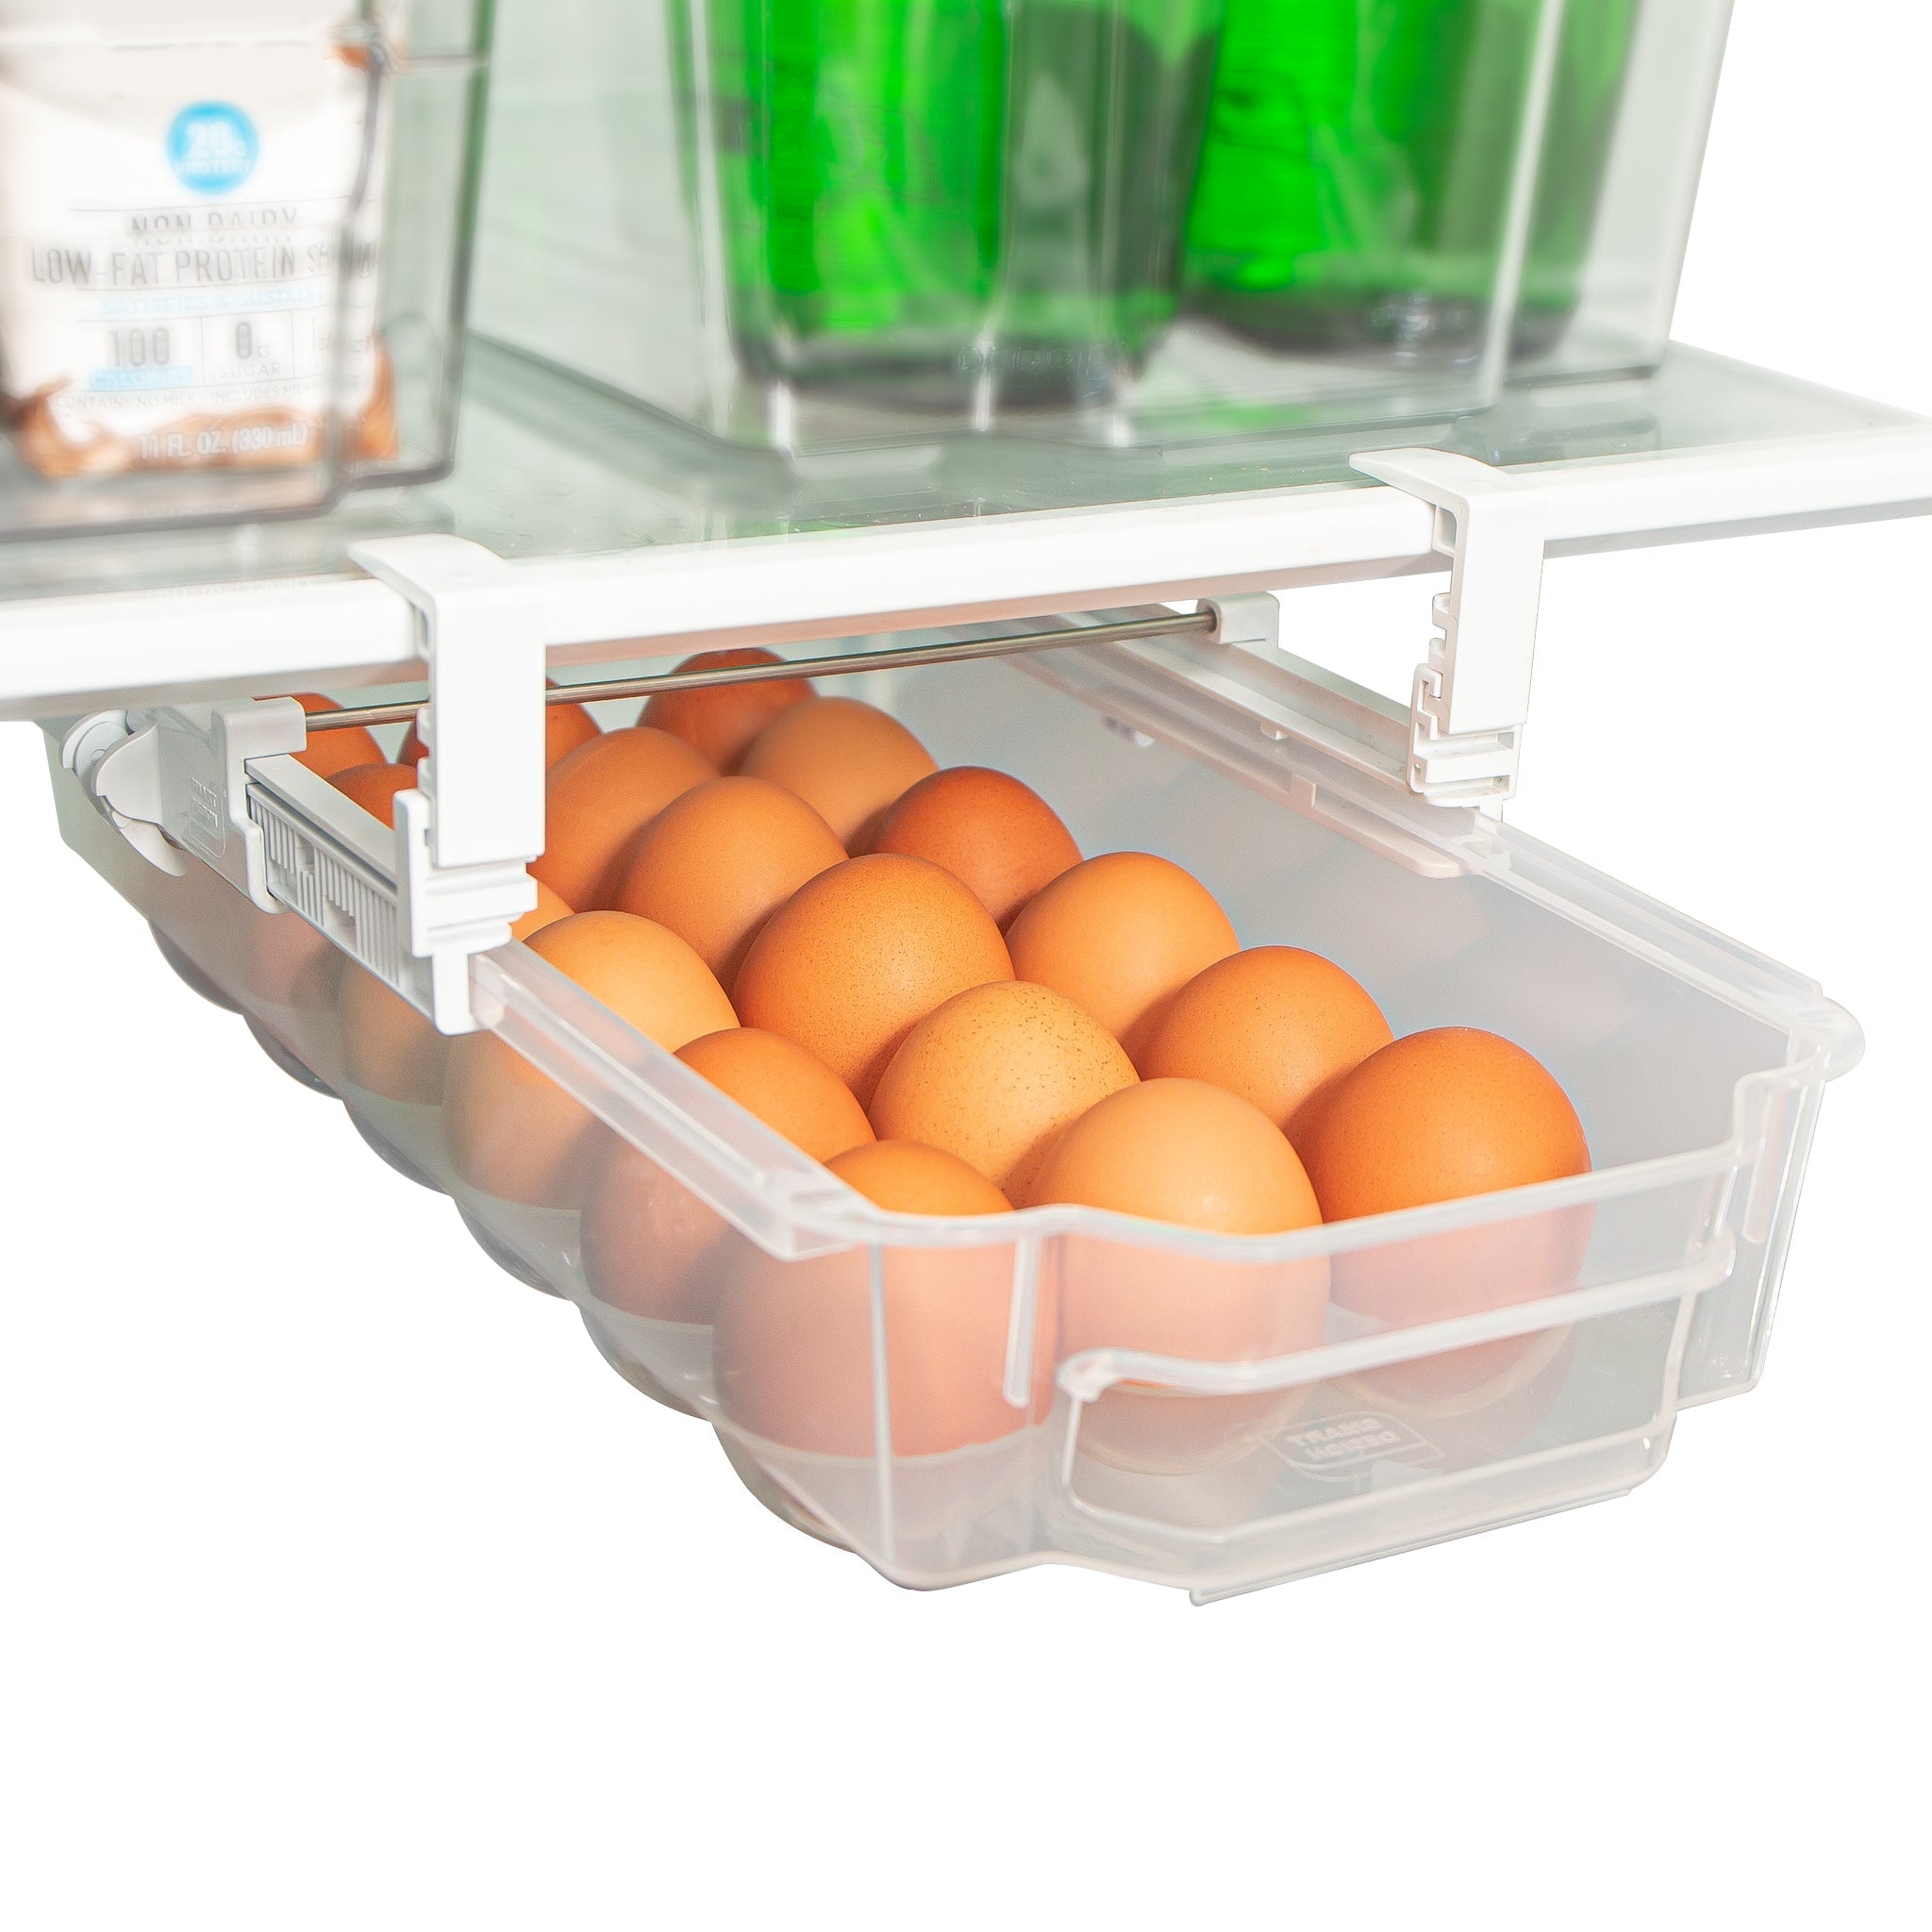 http://www.shopsmartdesign.com/cdn/shop/products/sliding-egg-drawer-with-extendable-rails-holds-18-eggs-smart-design-kitchen-8446498-incrementing-number-274615.jpg?v=1679337199